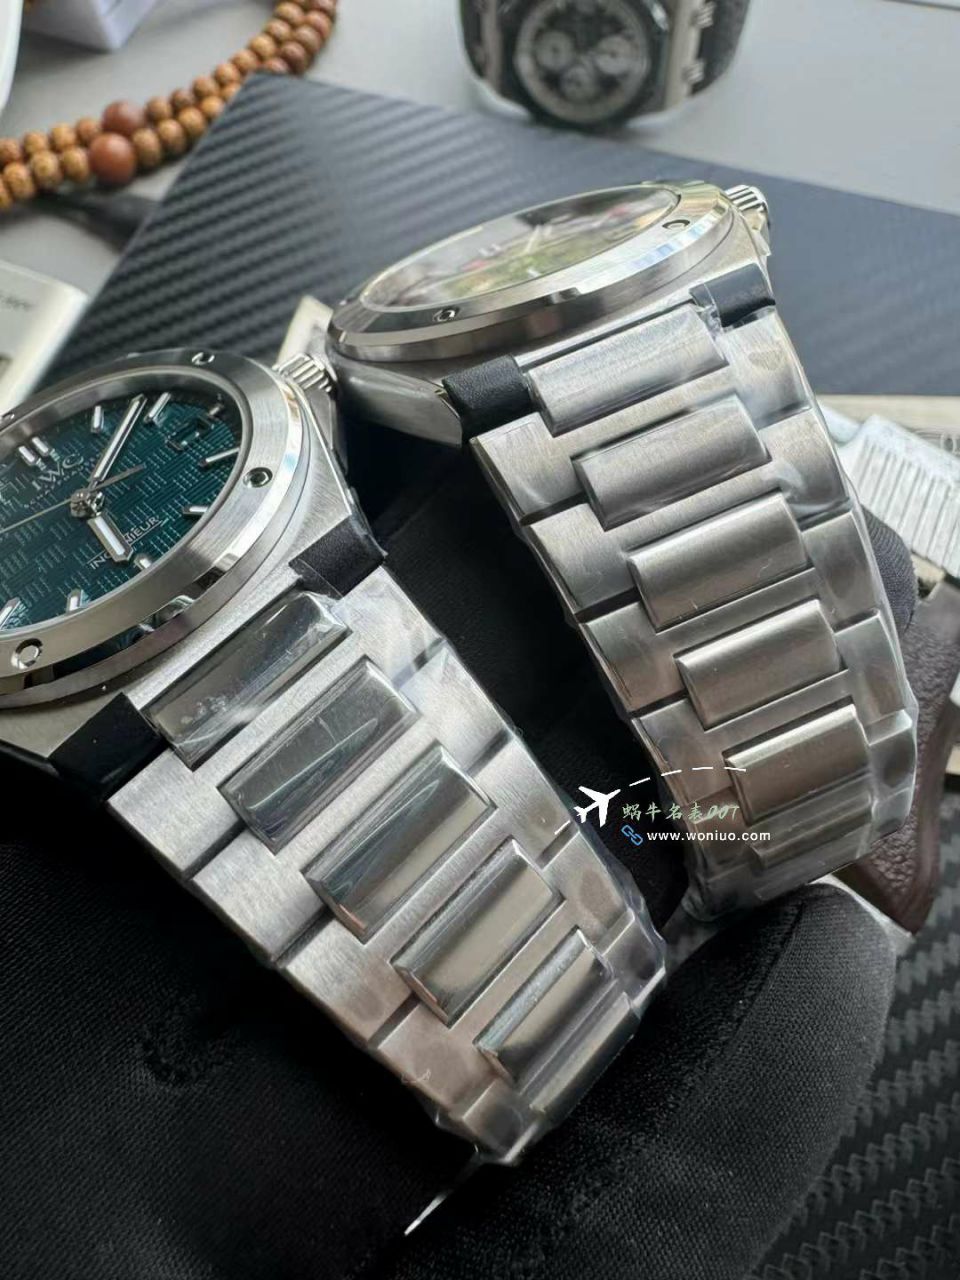 【视频评测】V7厂万国工程师顶级高仿复刻手表IW328903腕表 / WG628